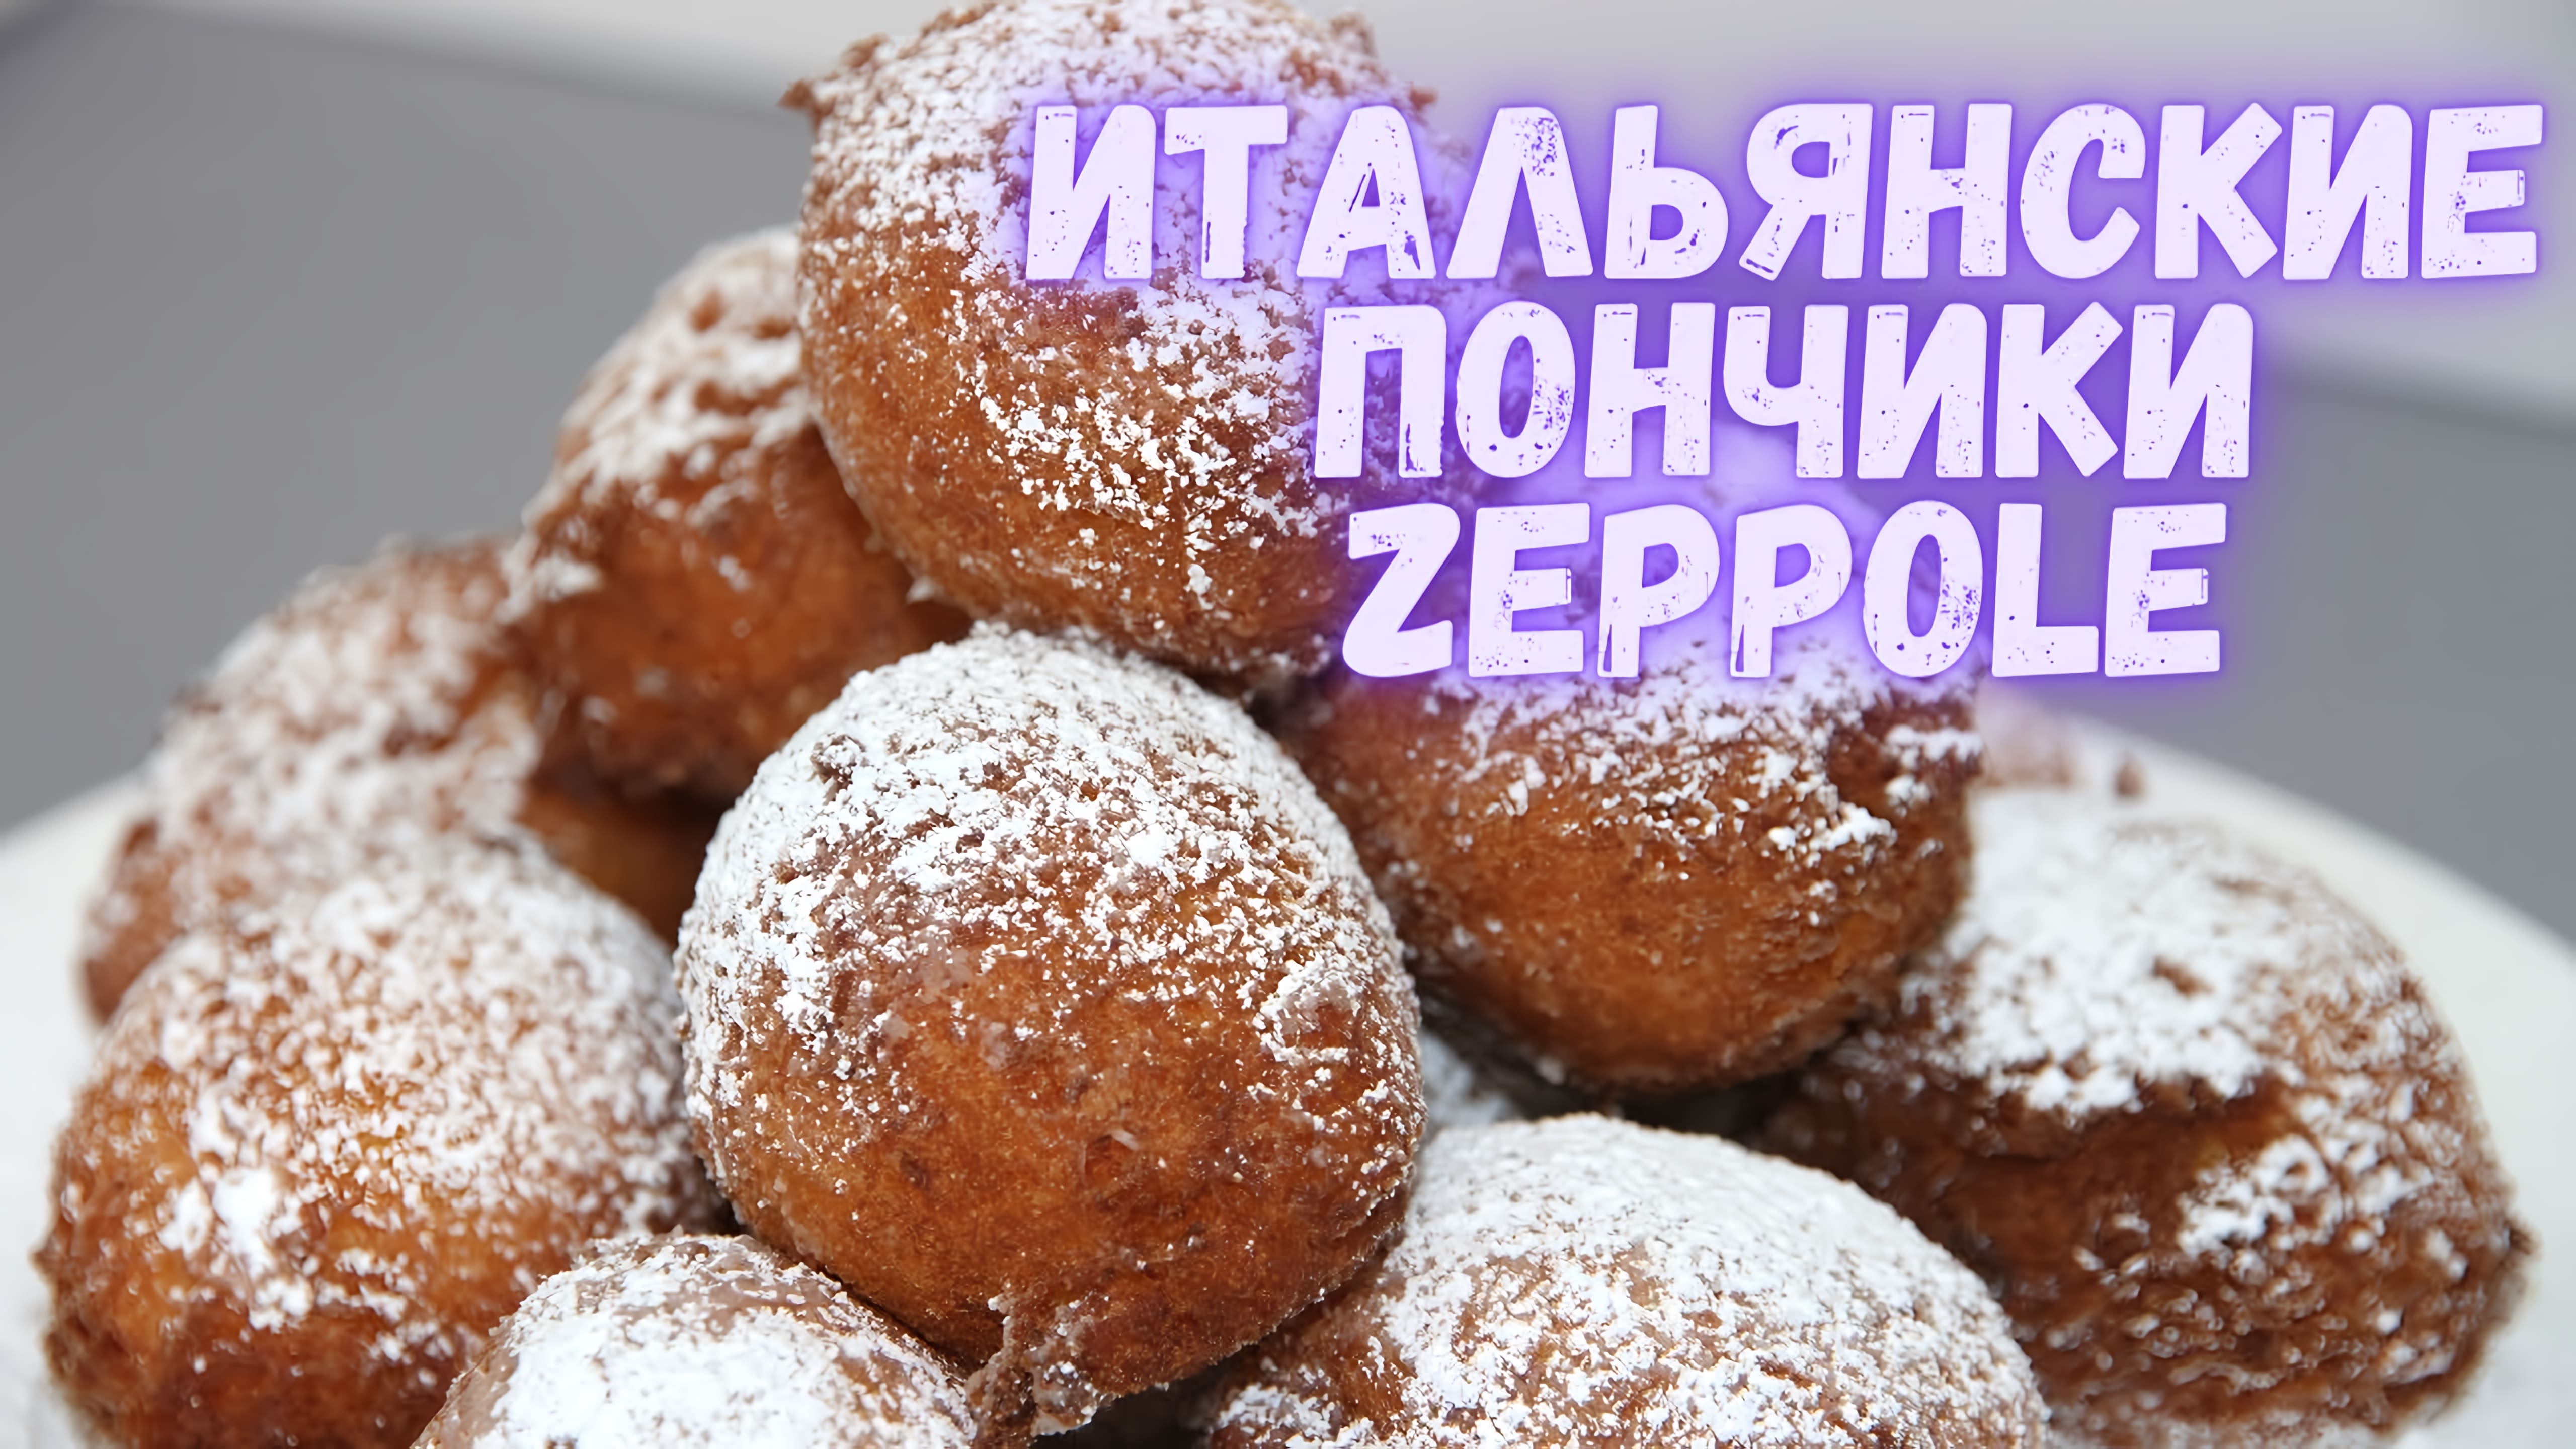 Видео: ZEPPOLE — итальянские пончики. Очень вкусные пончики! Готовить их проще простого!